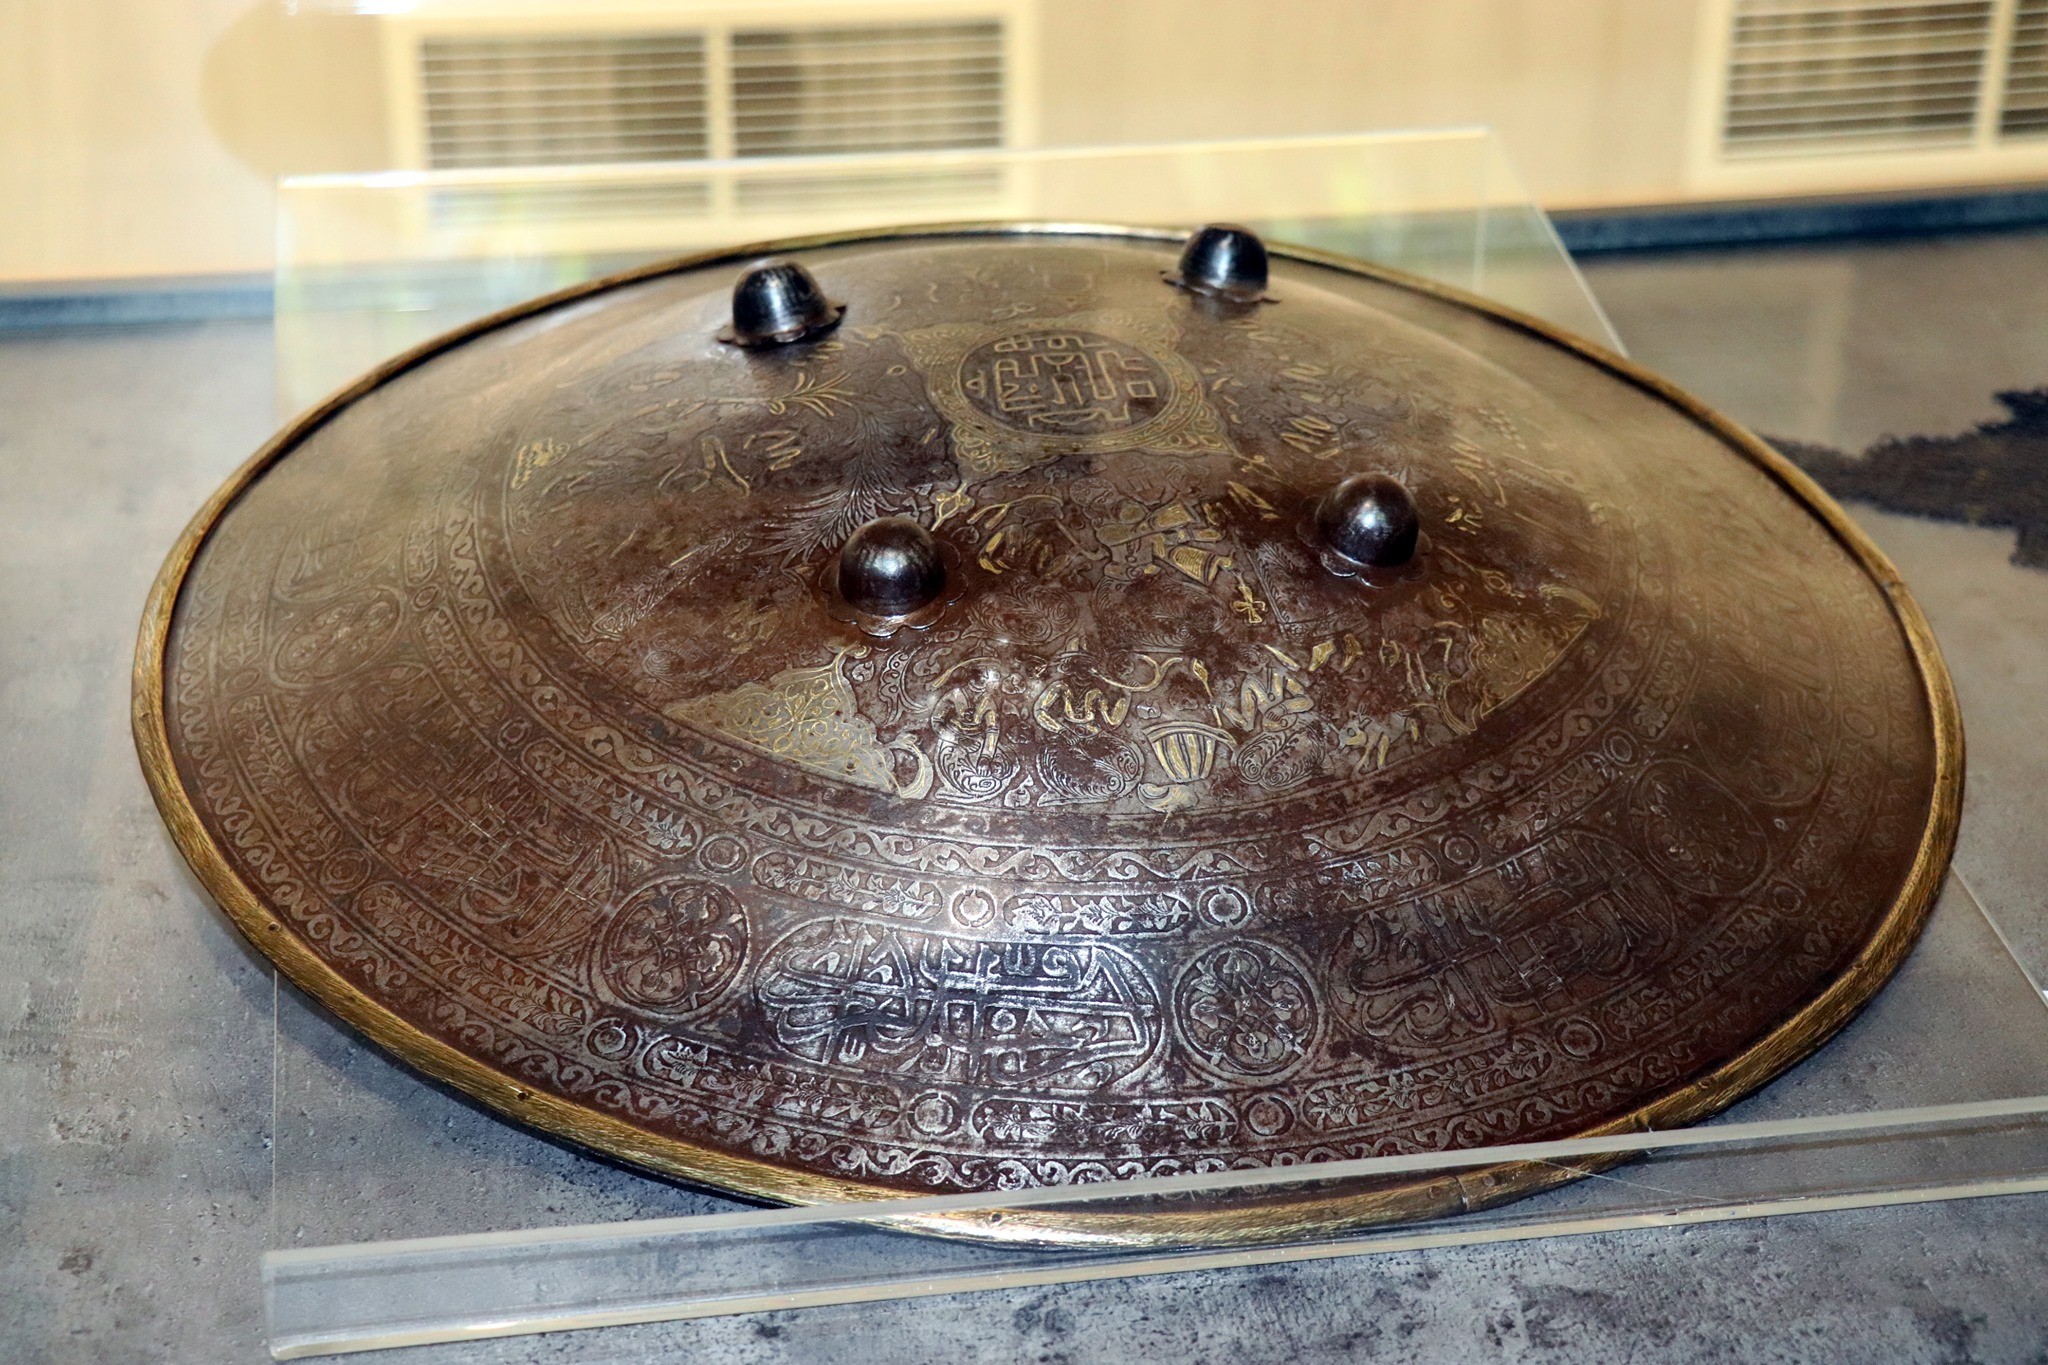 ფარი; ფოლადი, ვერცხლი, თითბერი; ყაჯარული პერიოდი (XVIII-XIX), წარმომავლობა: სპარსული.

სარგის კაკაბაძის საოჯახო არქივიდან

Shield; Steel, silver, brass; Qajar period (XVIII-XIX), Origin: Persian.

From Sargis Kakabadze’s family archive